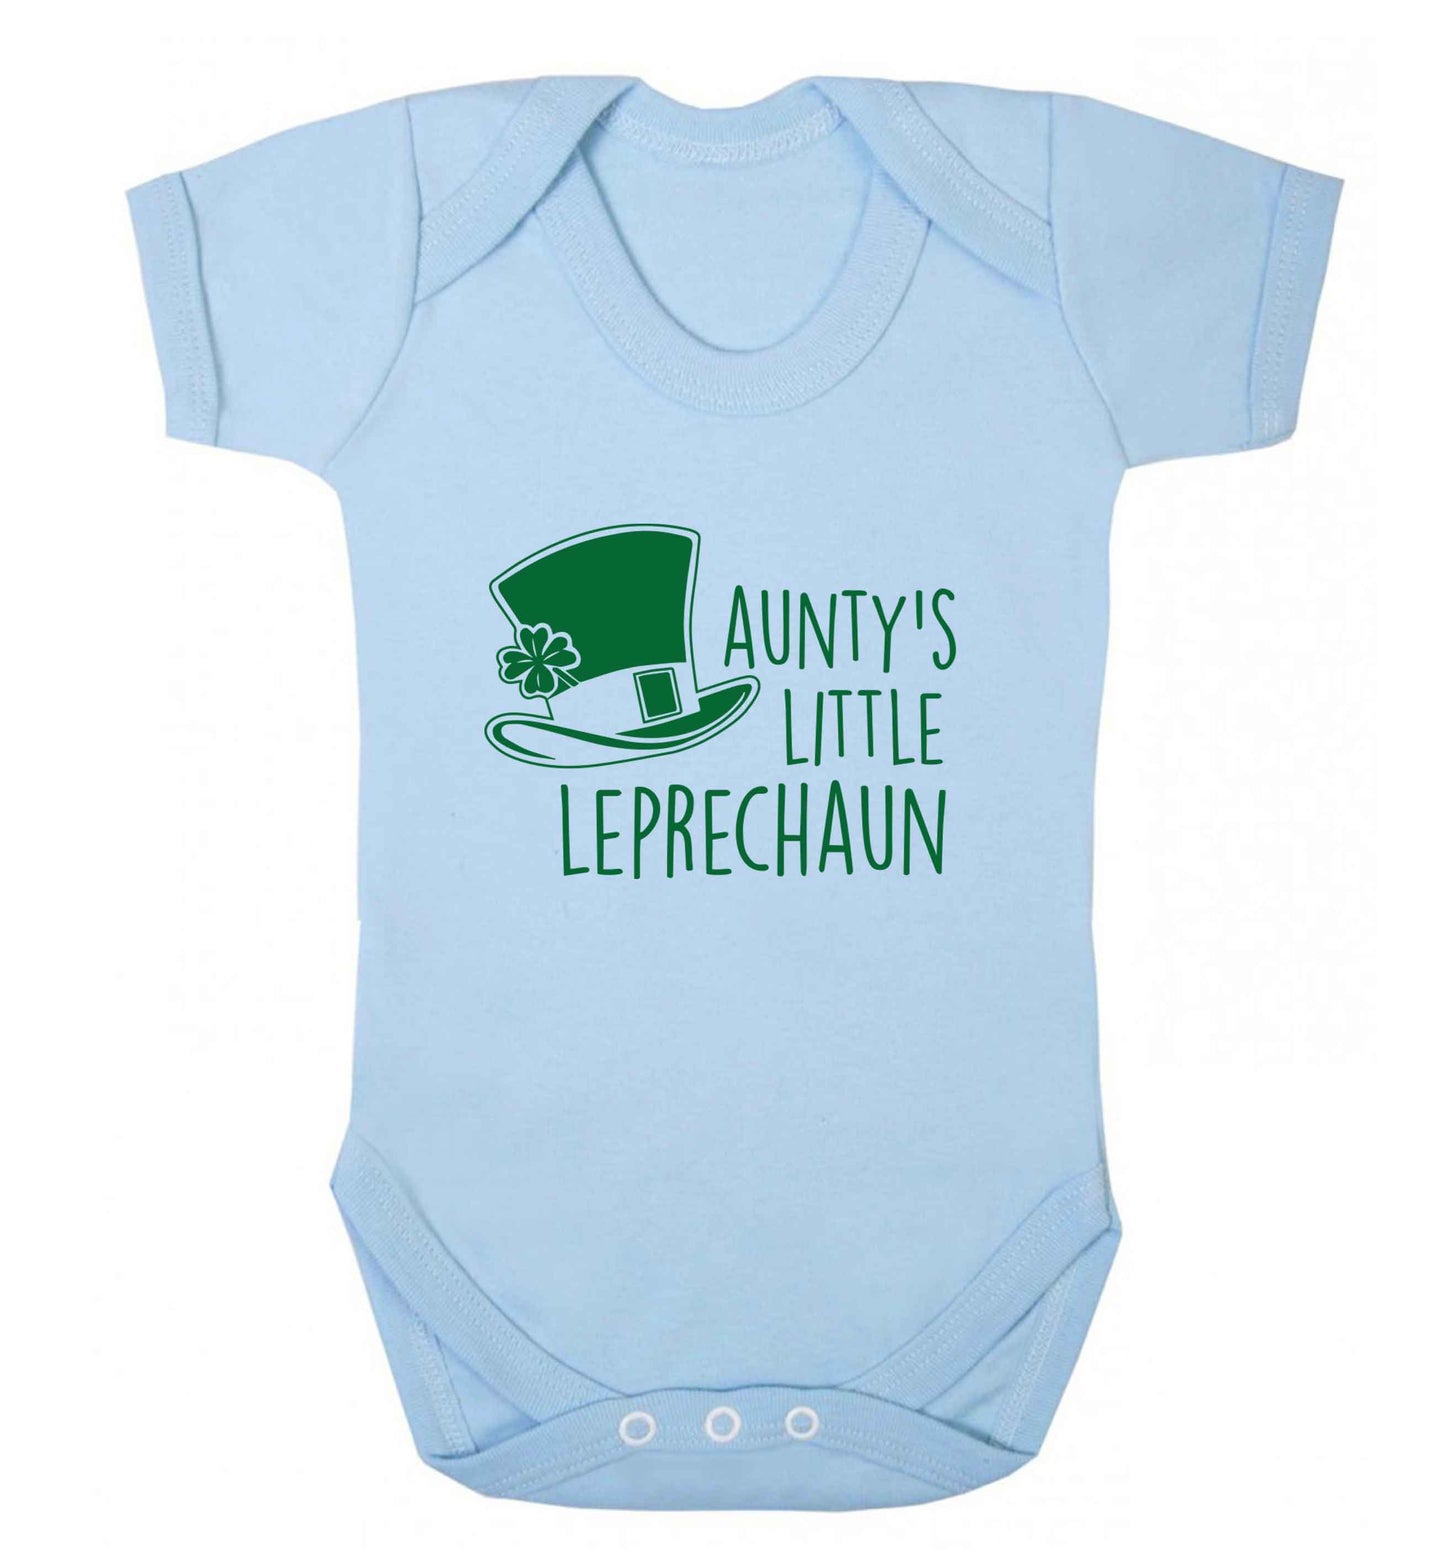 Aunty's little leprechaun baby vest pale blue 18-24 months